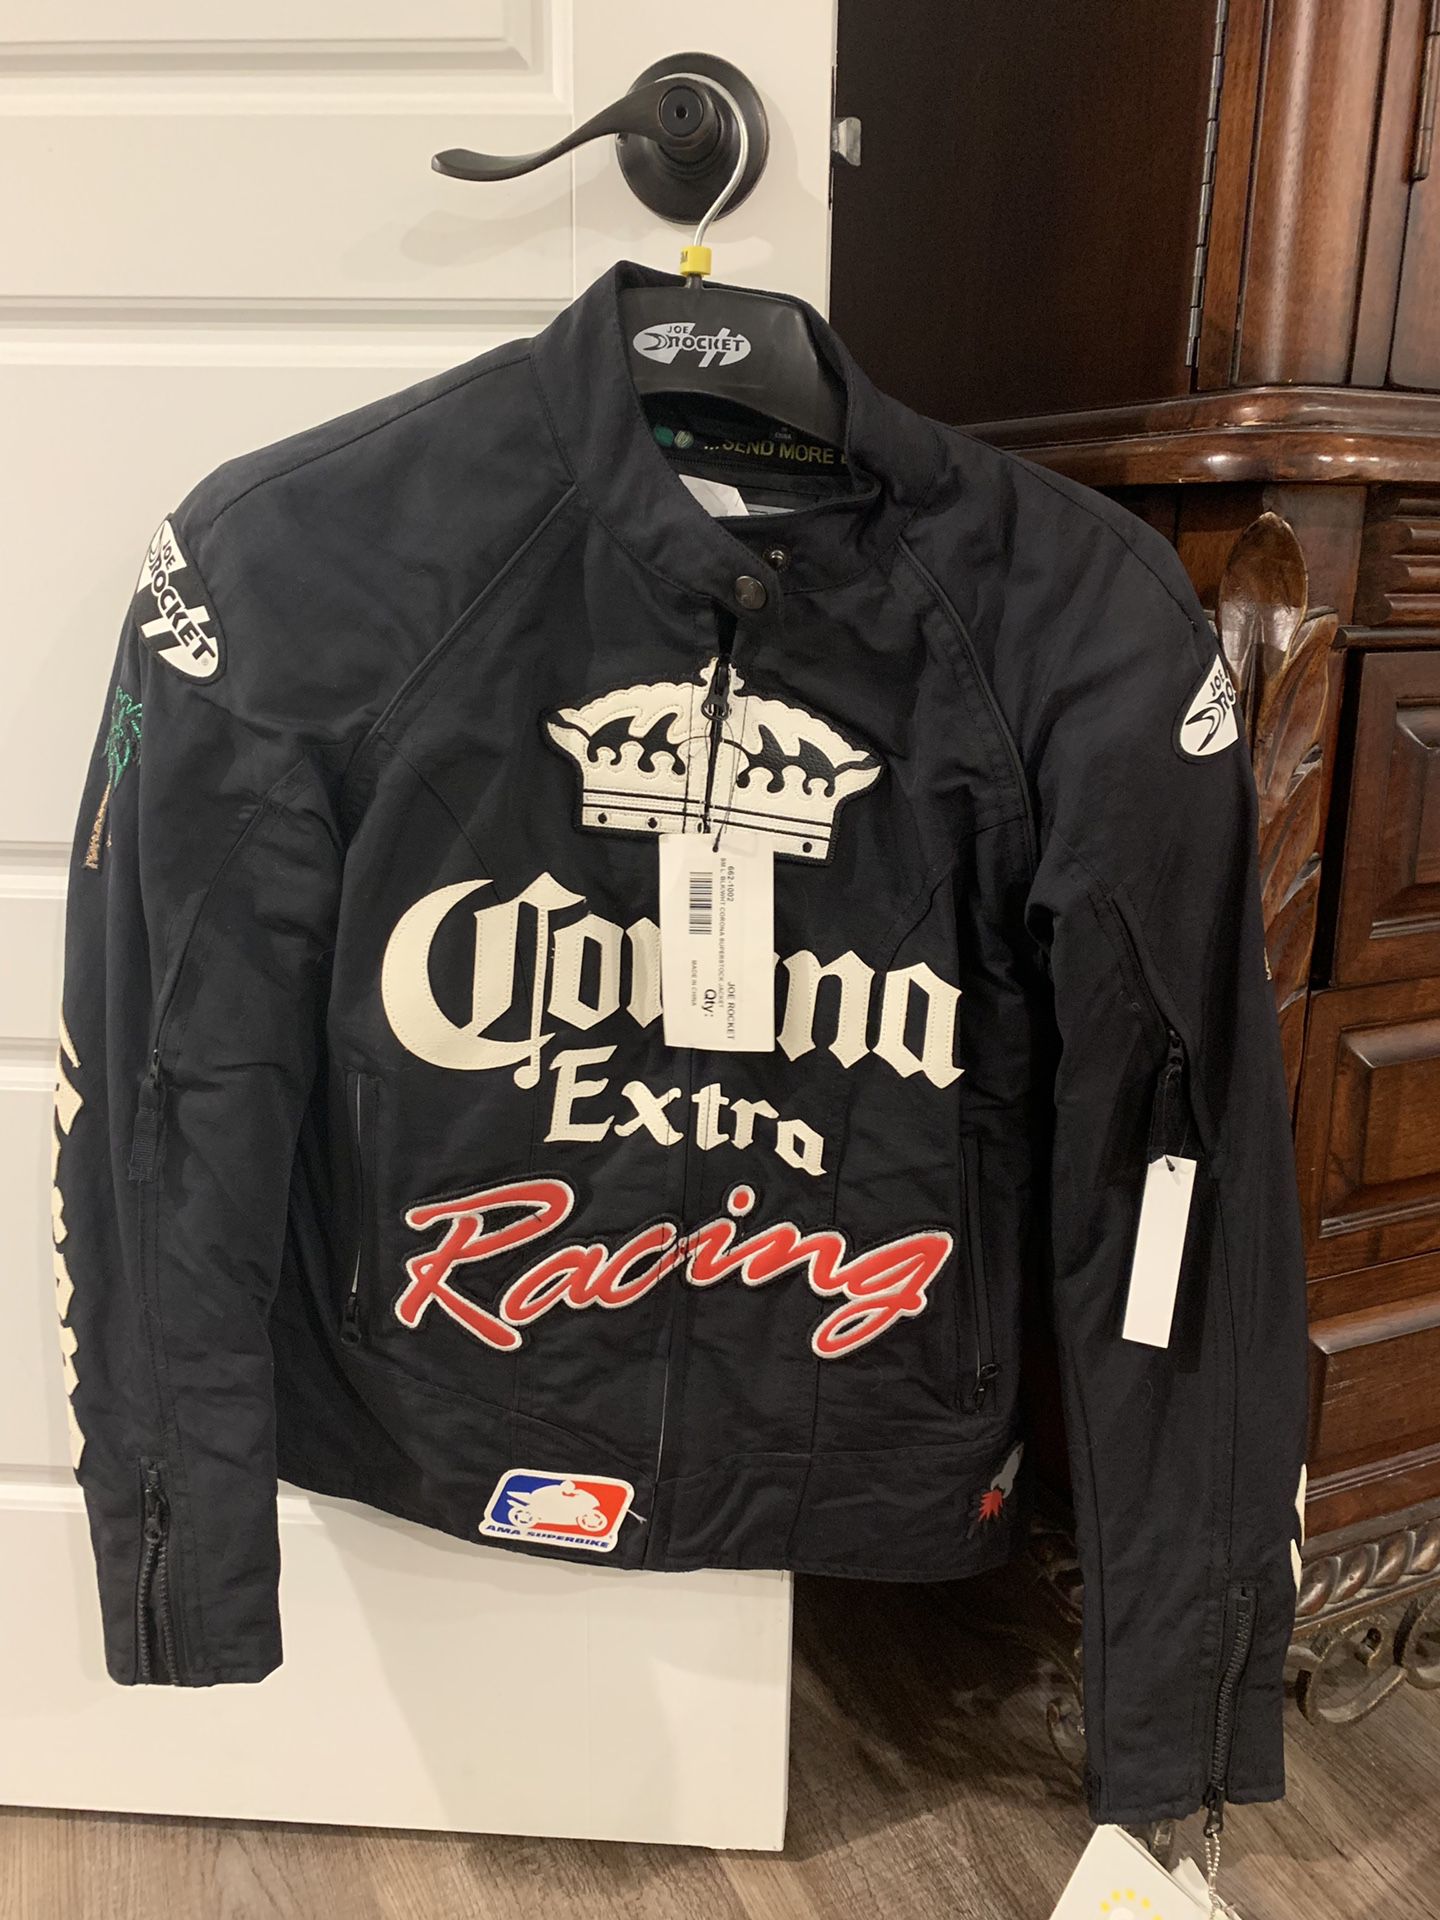 Joe Rocket women’s motorcycle jacket